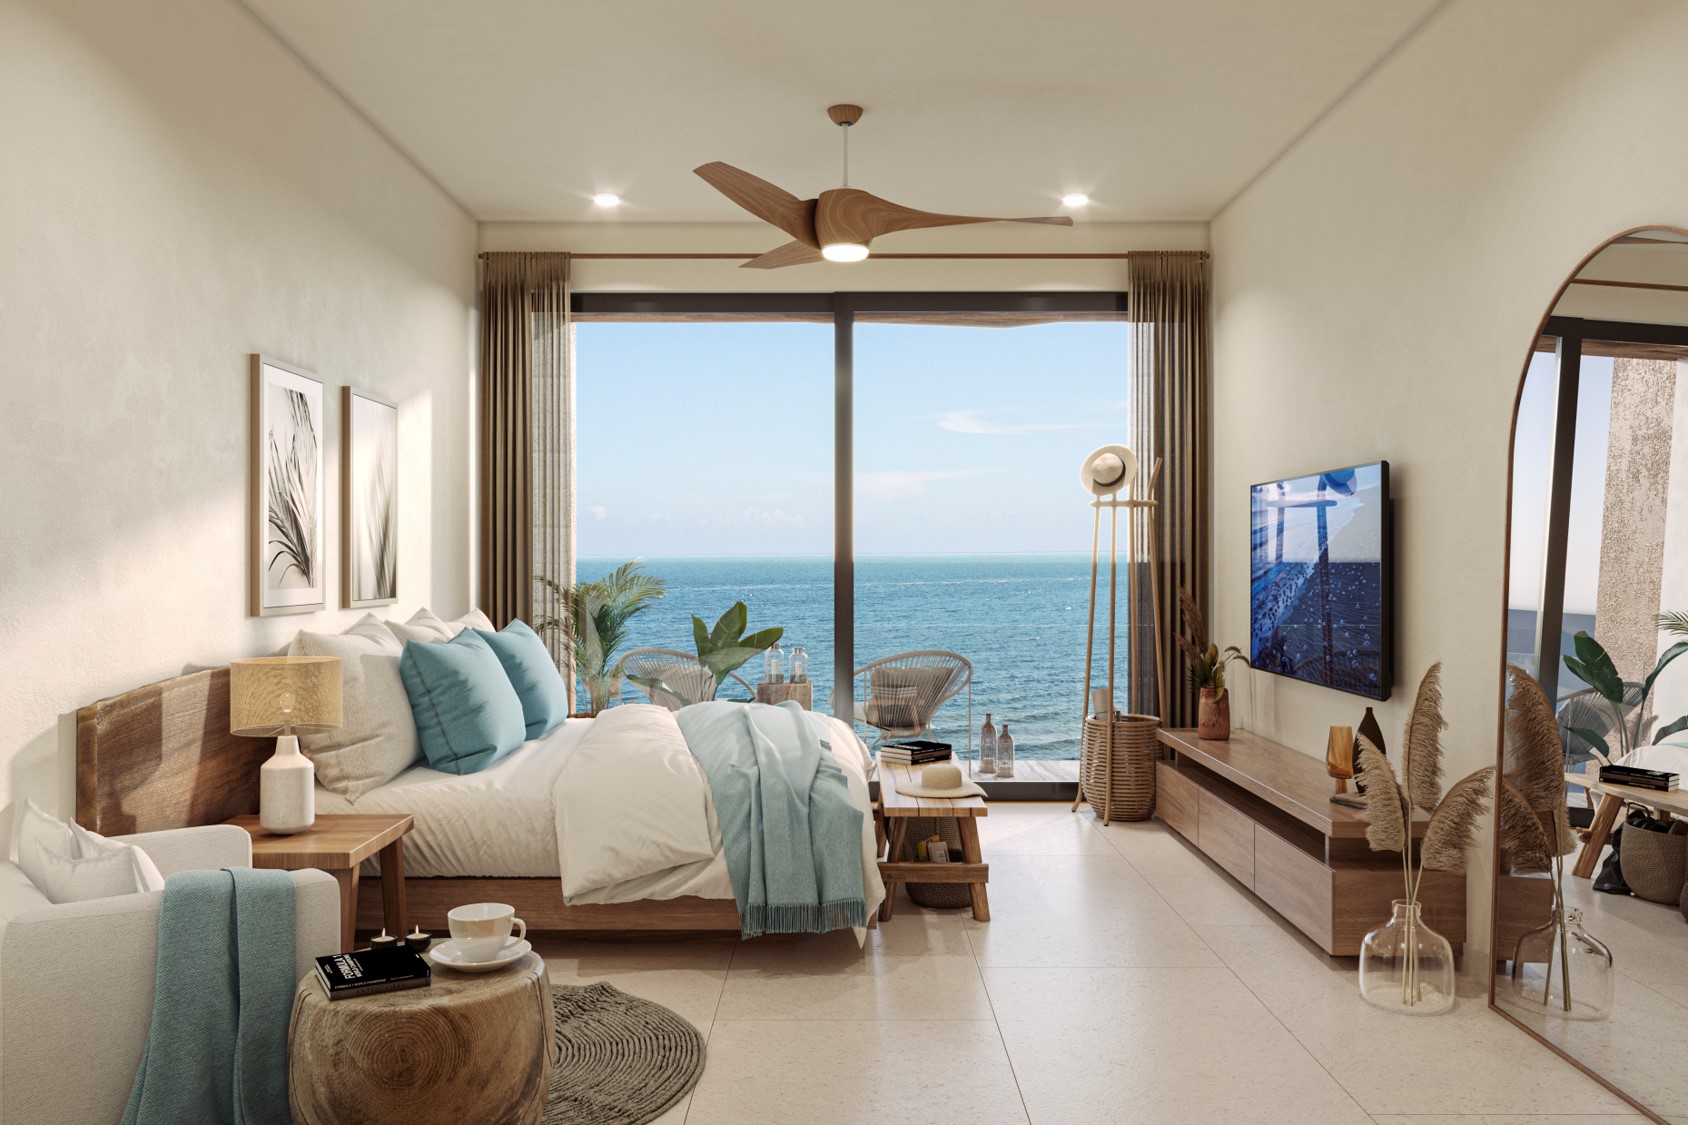 c luxury beachfront condos in tulum 041 guest bedroom sunrise